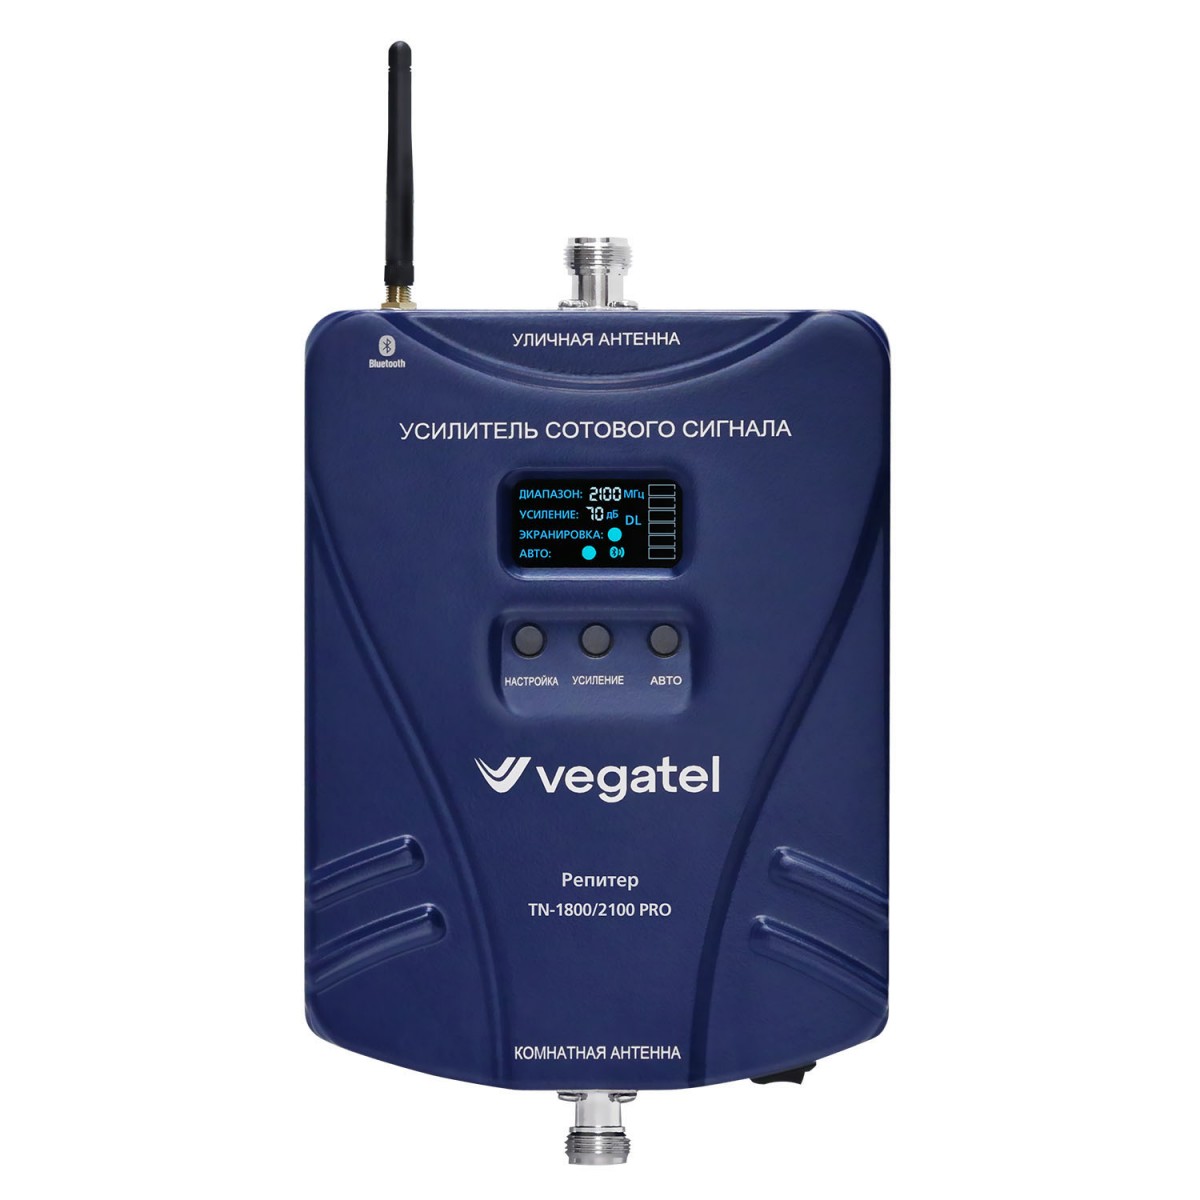 Детальное изображение товара "Комплект усиления сотовой связи Vegatel TN-1800/2100 PRO" из каталога оборудования Антенна76